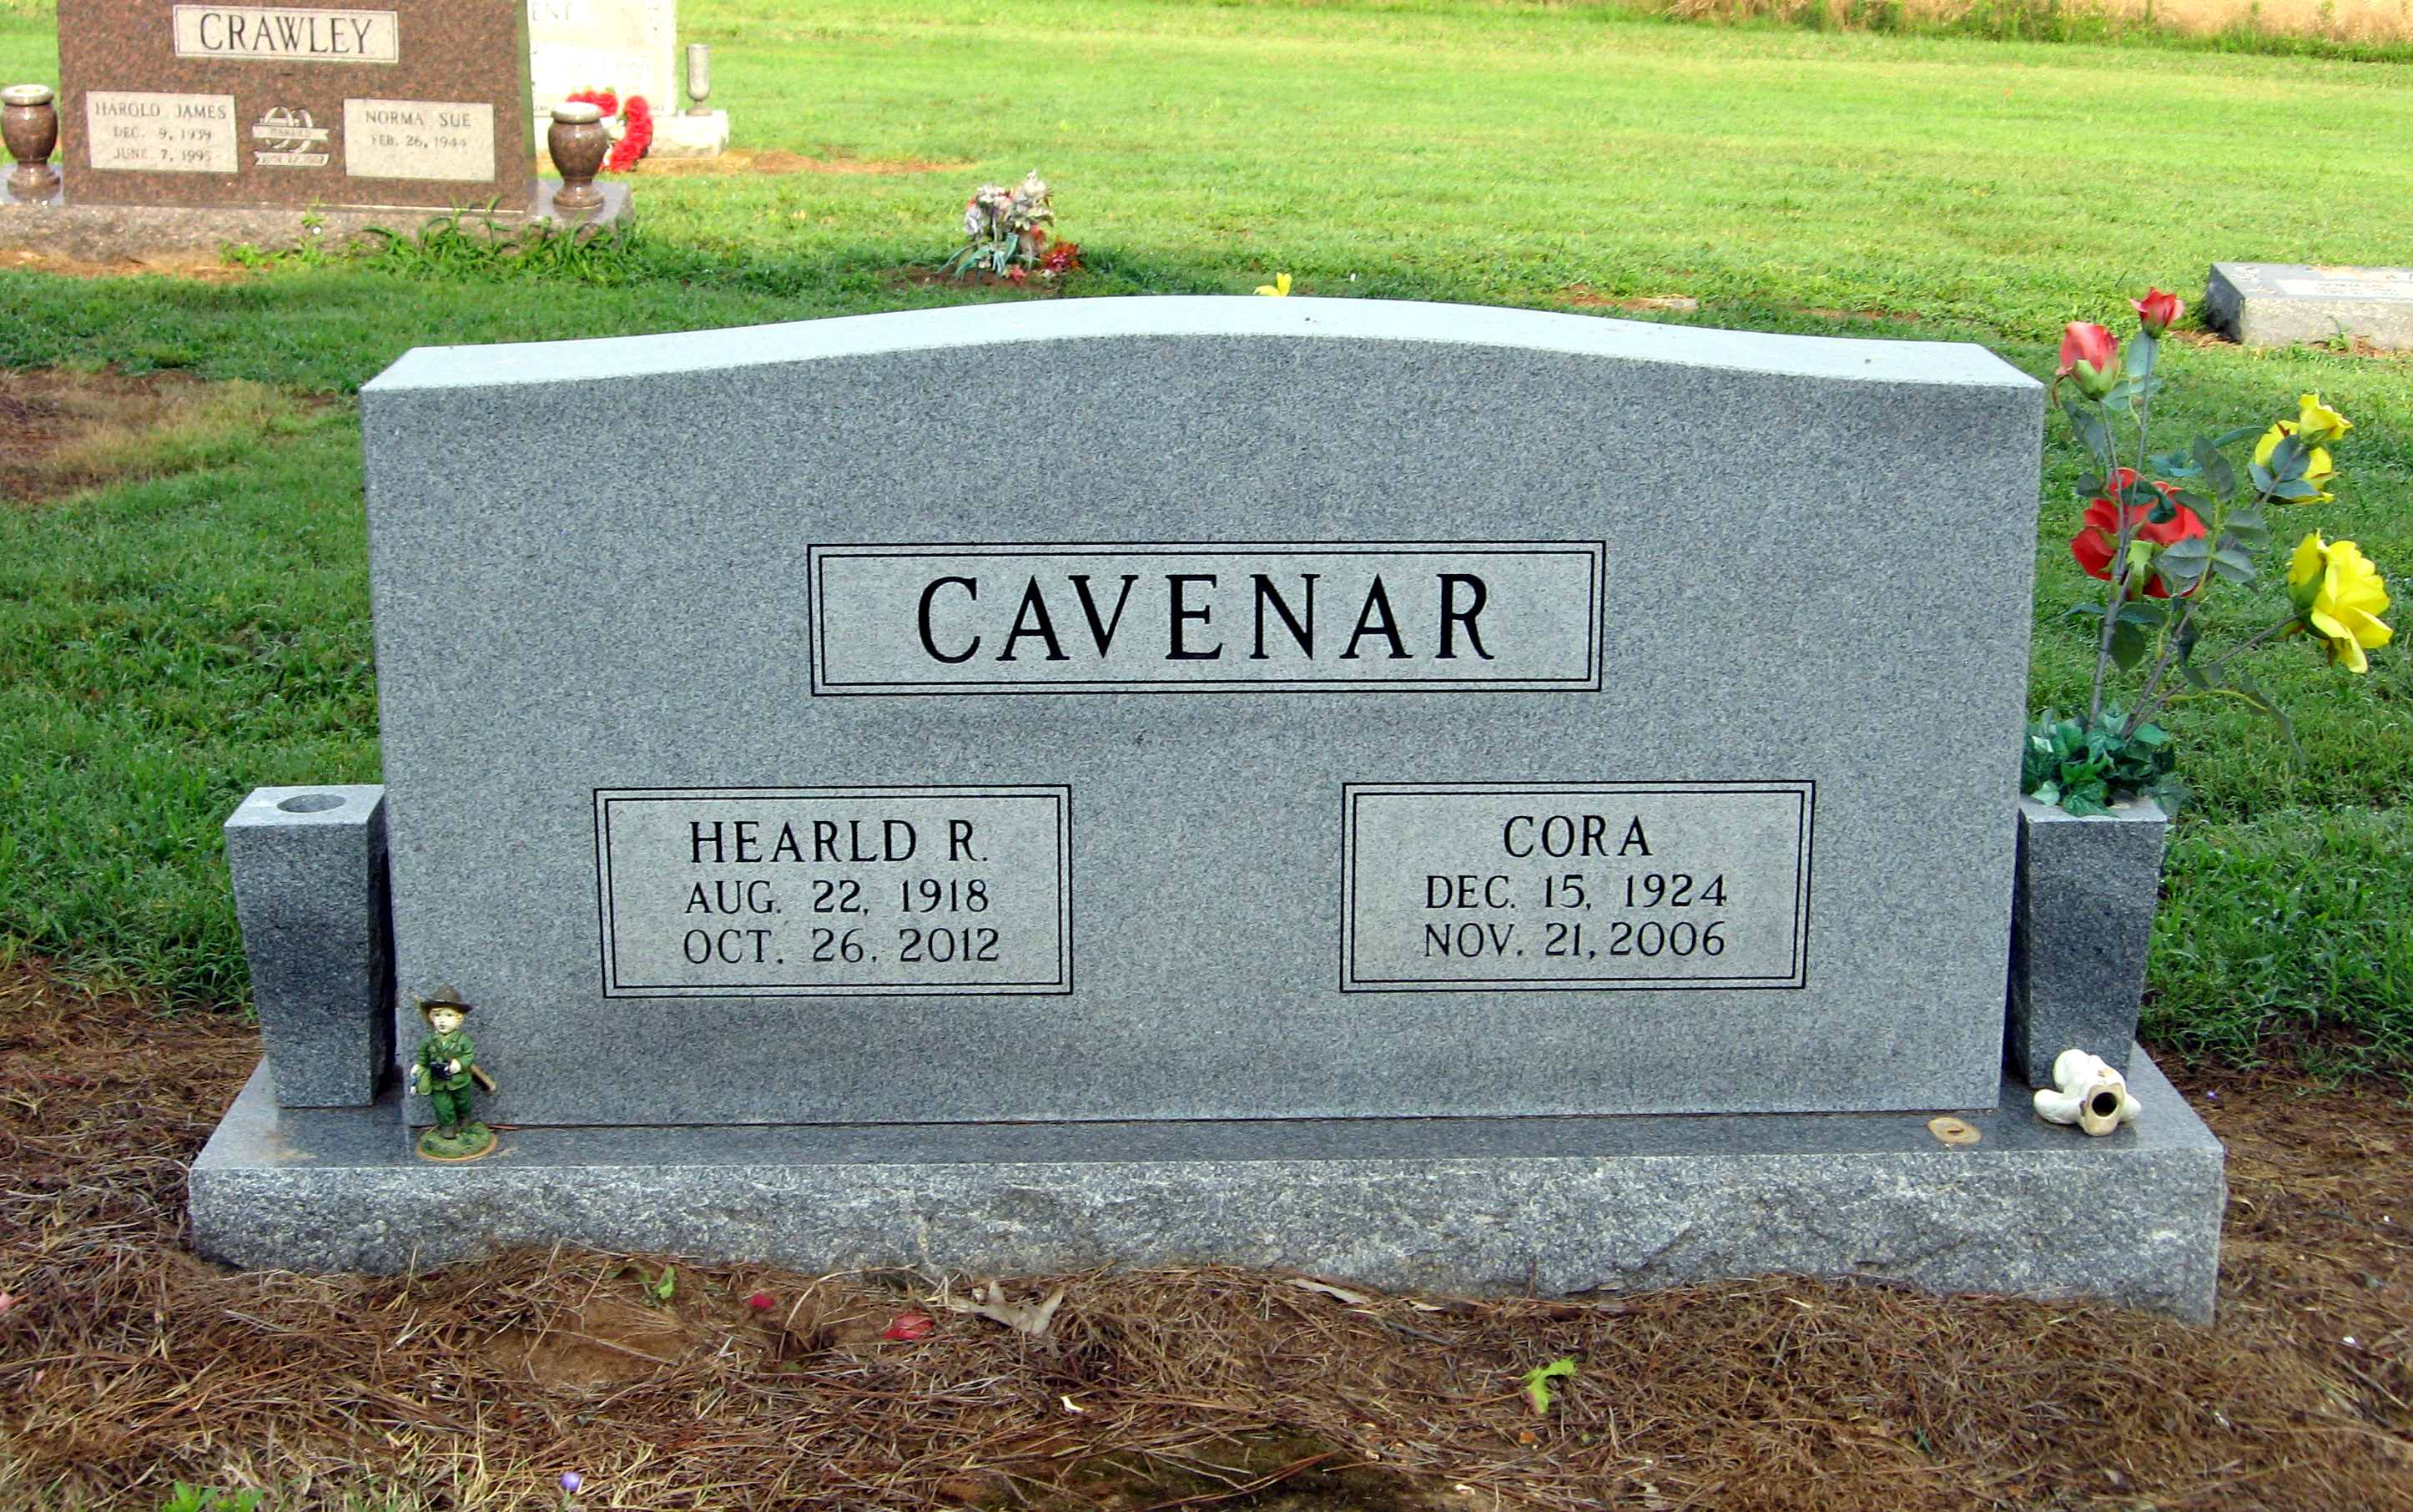 Cora Cavenar (1924-2006)